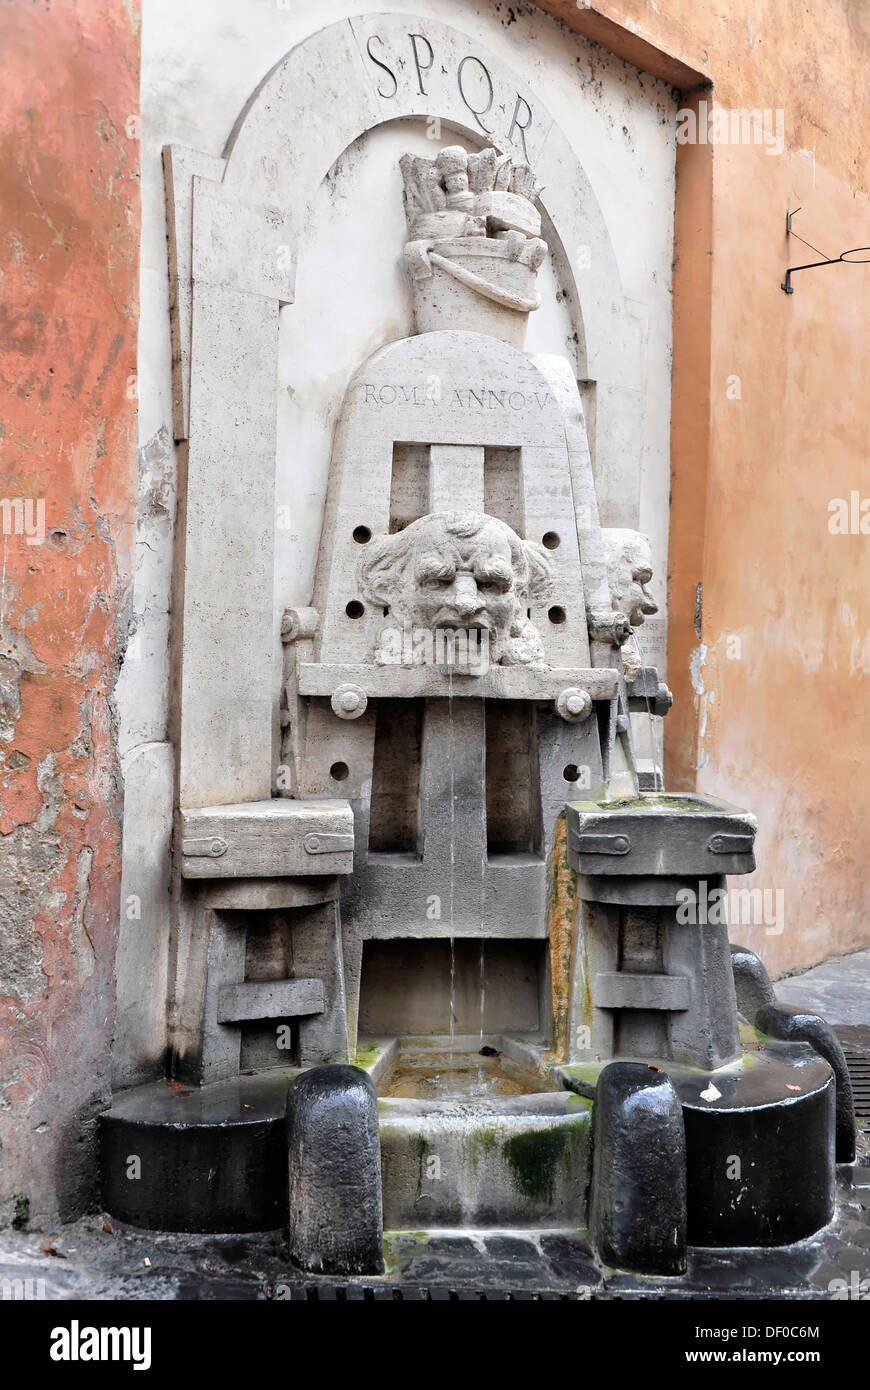 Trinkwasser-Brunnen, Schriftzug SPQR, restauriert im Jahr 1998 von Stefano Gasbarri, Via Margutta, Rom, Italien, Europa Stockfoto